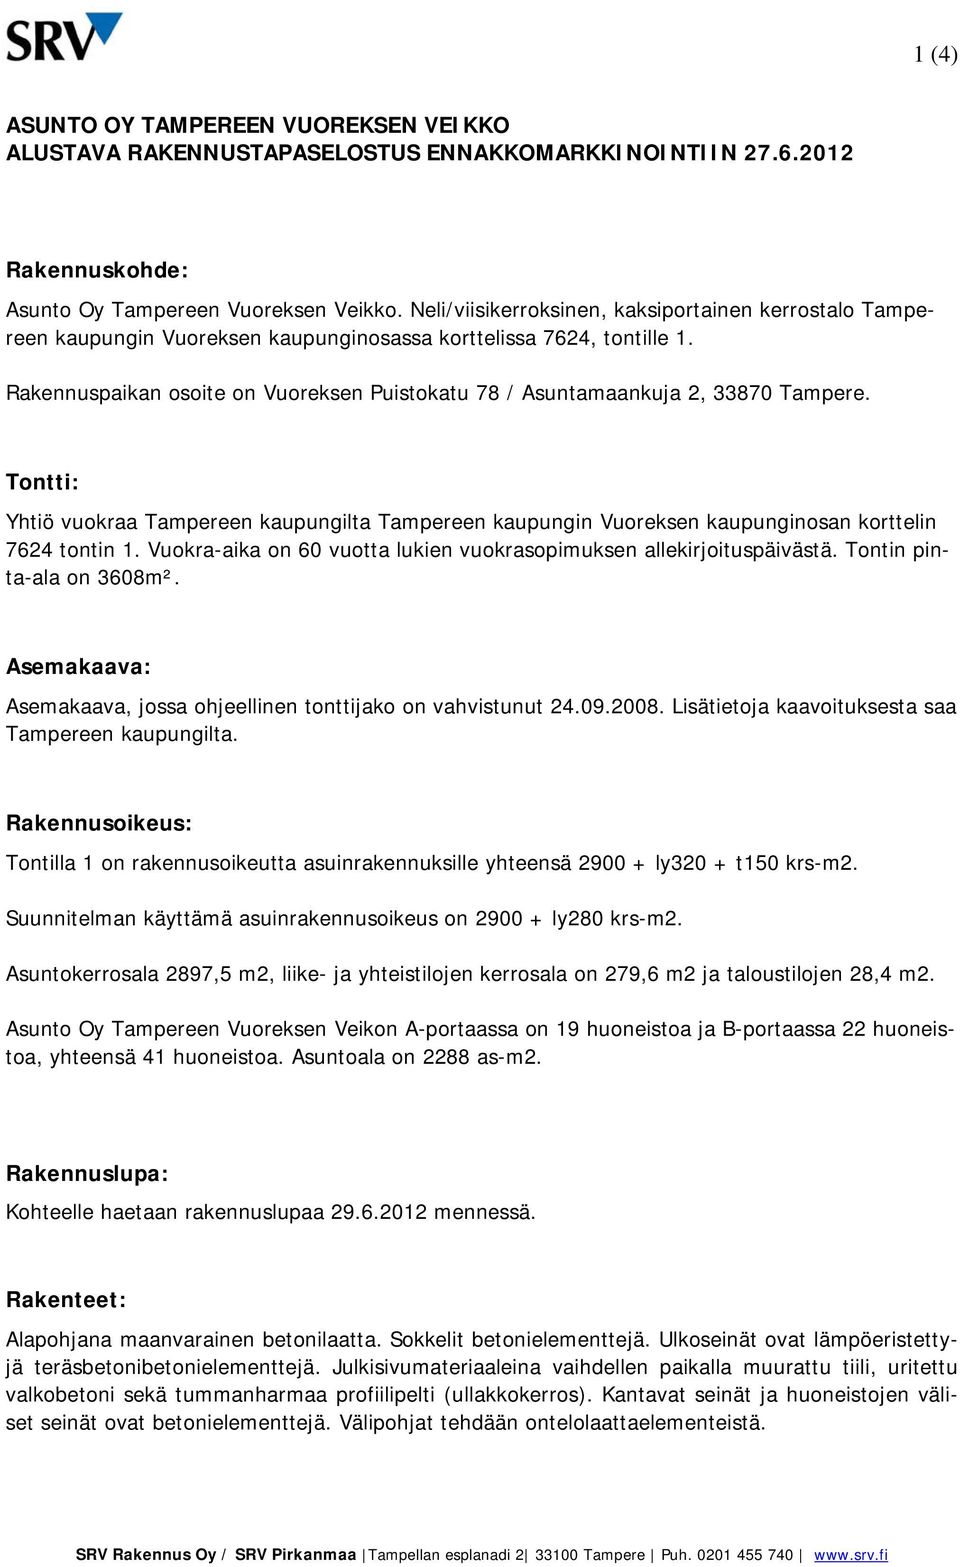 Rakennuspaikan osoite on Vuoreksen Puistokatu 78 / Asuntamaankuja 2, 33870 Tampere. Tontti: Yhtiö vuokraa Tampereen kaupungilta Tampereen kaupungin Vuoreksen kaupunginosan korttelin 7624 tontin 1.